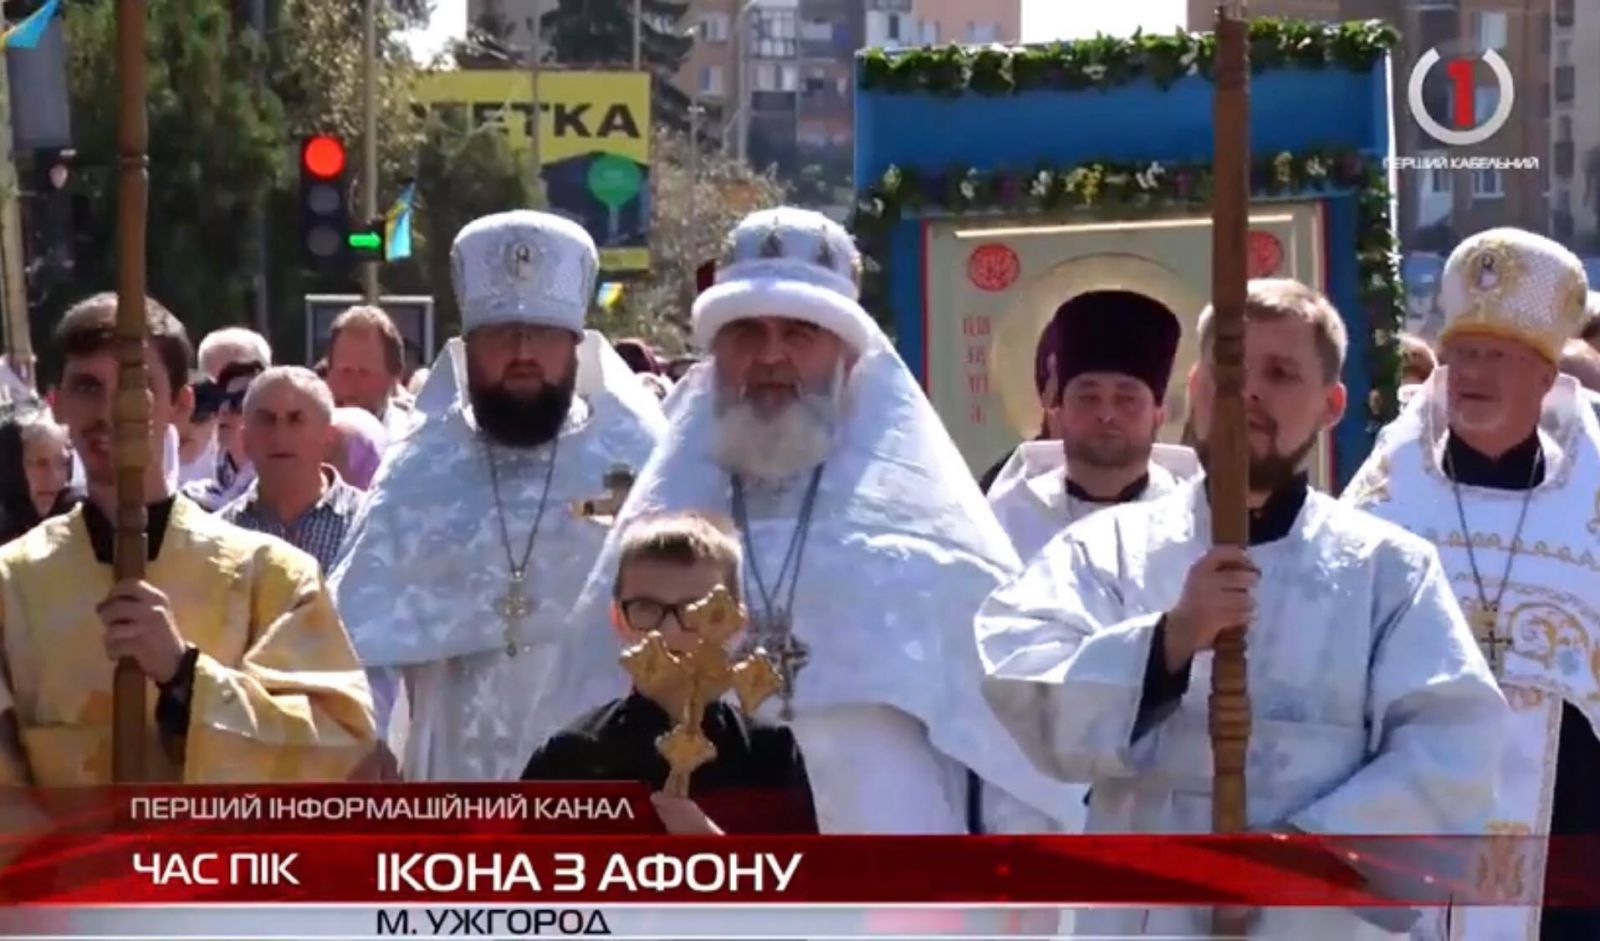 З вірою у серці та молитвою: сотні християн пройшли хресною ходою з Афонською іконою в Ужгороді (ВІДЕО)